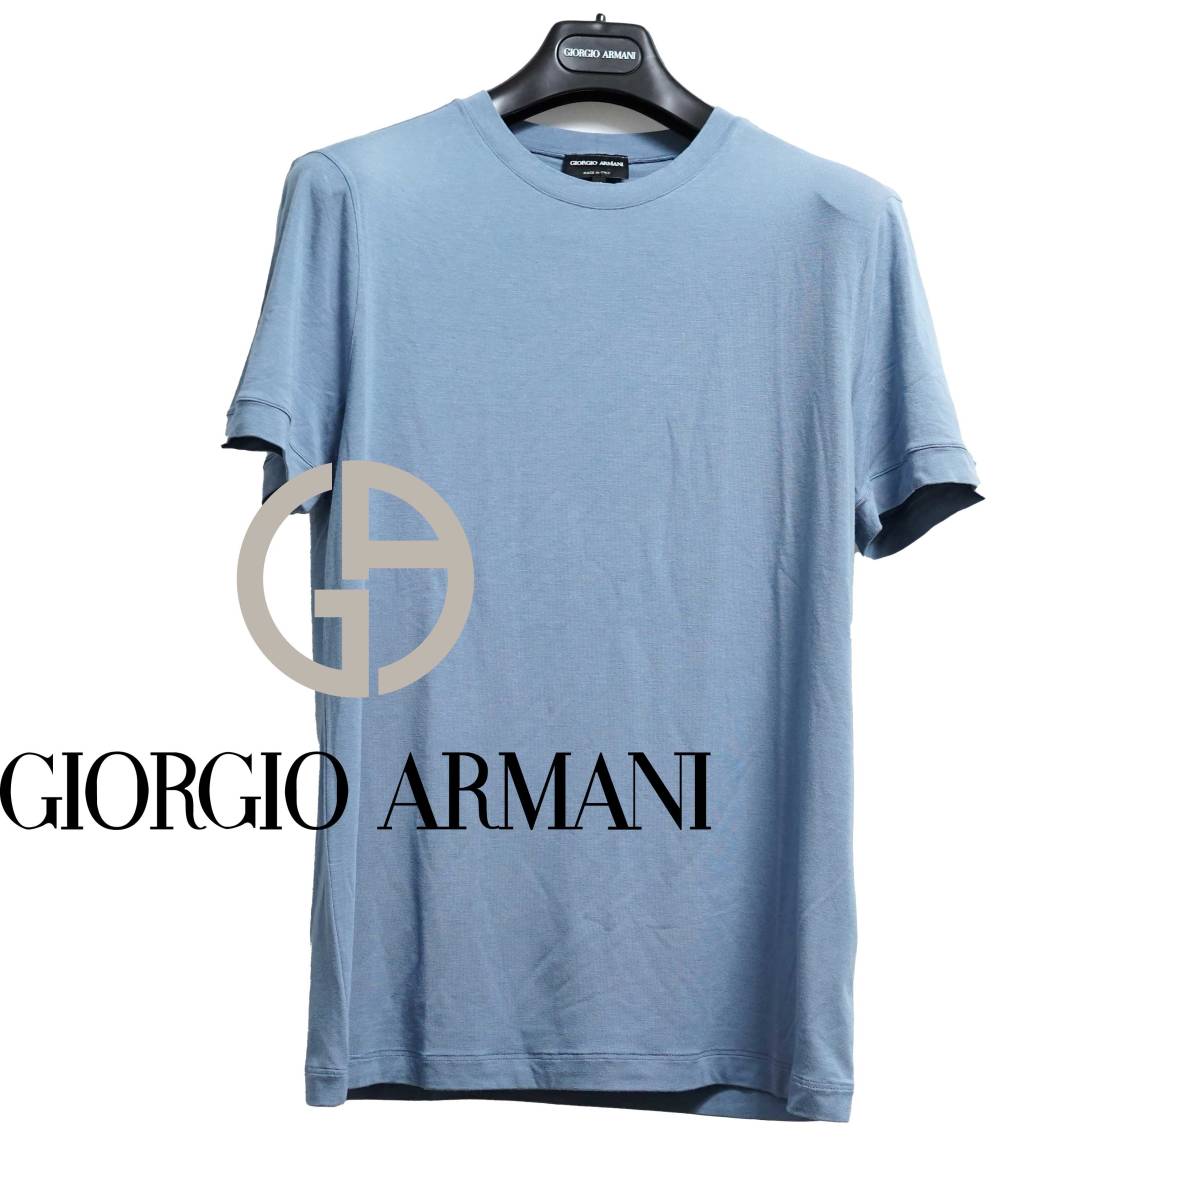 定番アイテム ストレッチTシャツ 着心地触り心地すべて抜群 GIORGIO ARMANI ジョルジオアルマーニ 50サイズ ブルー Tシャツ カットソー